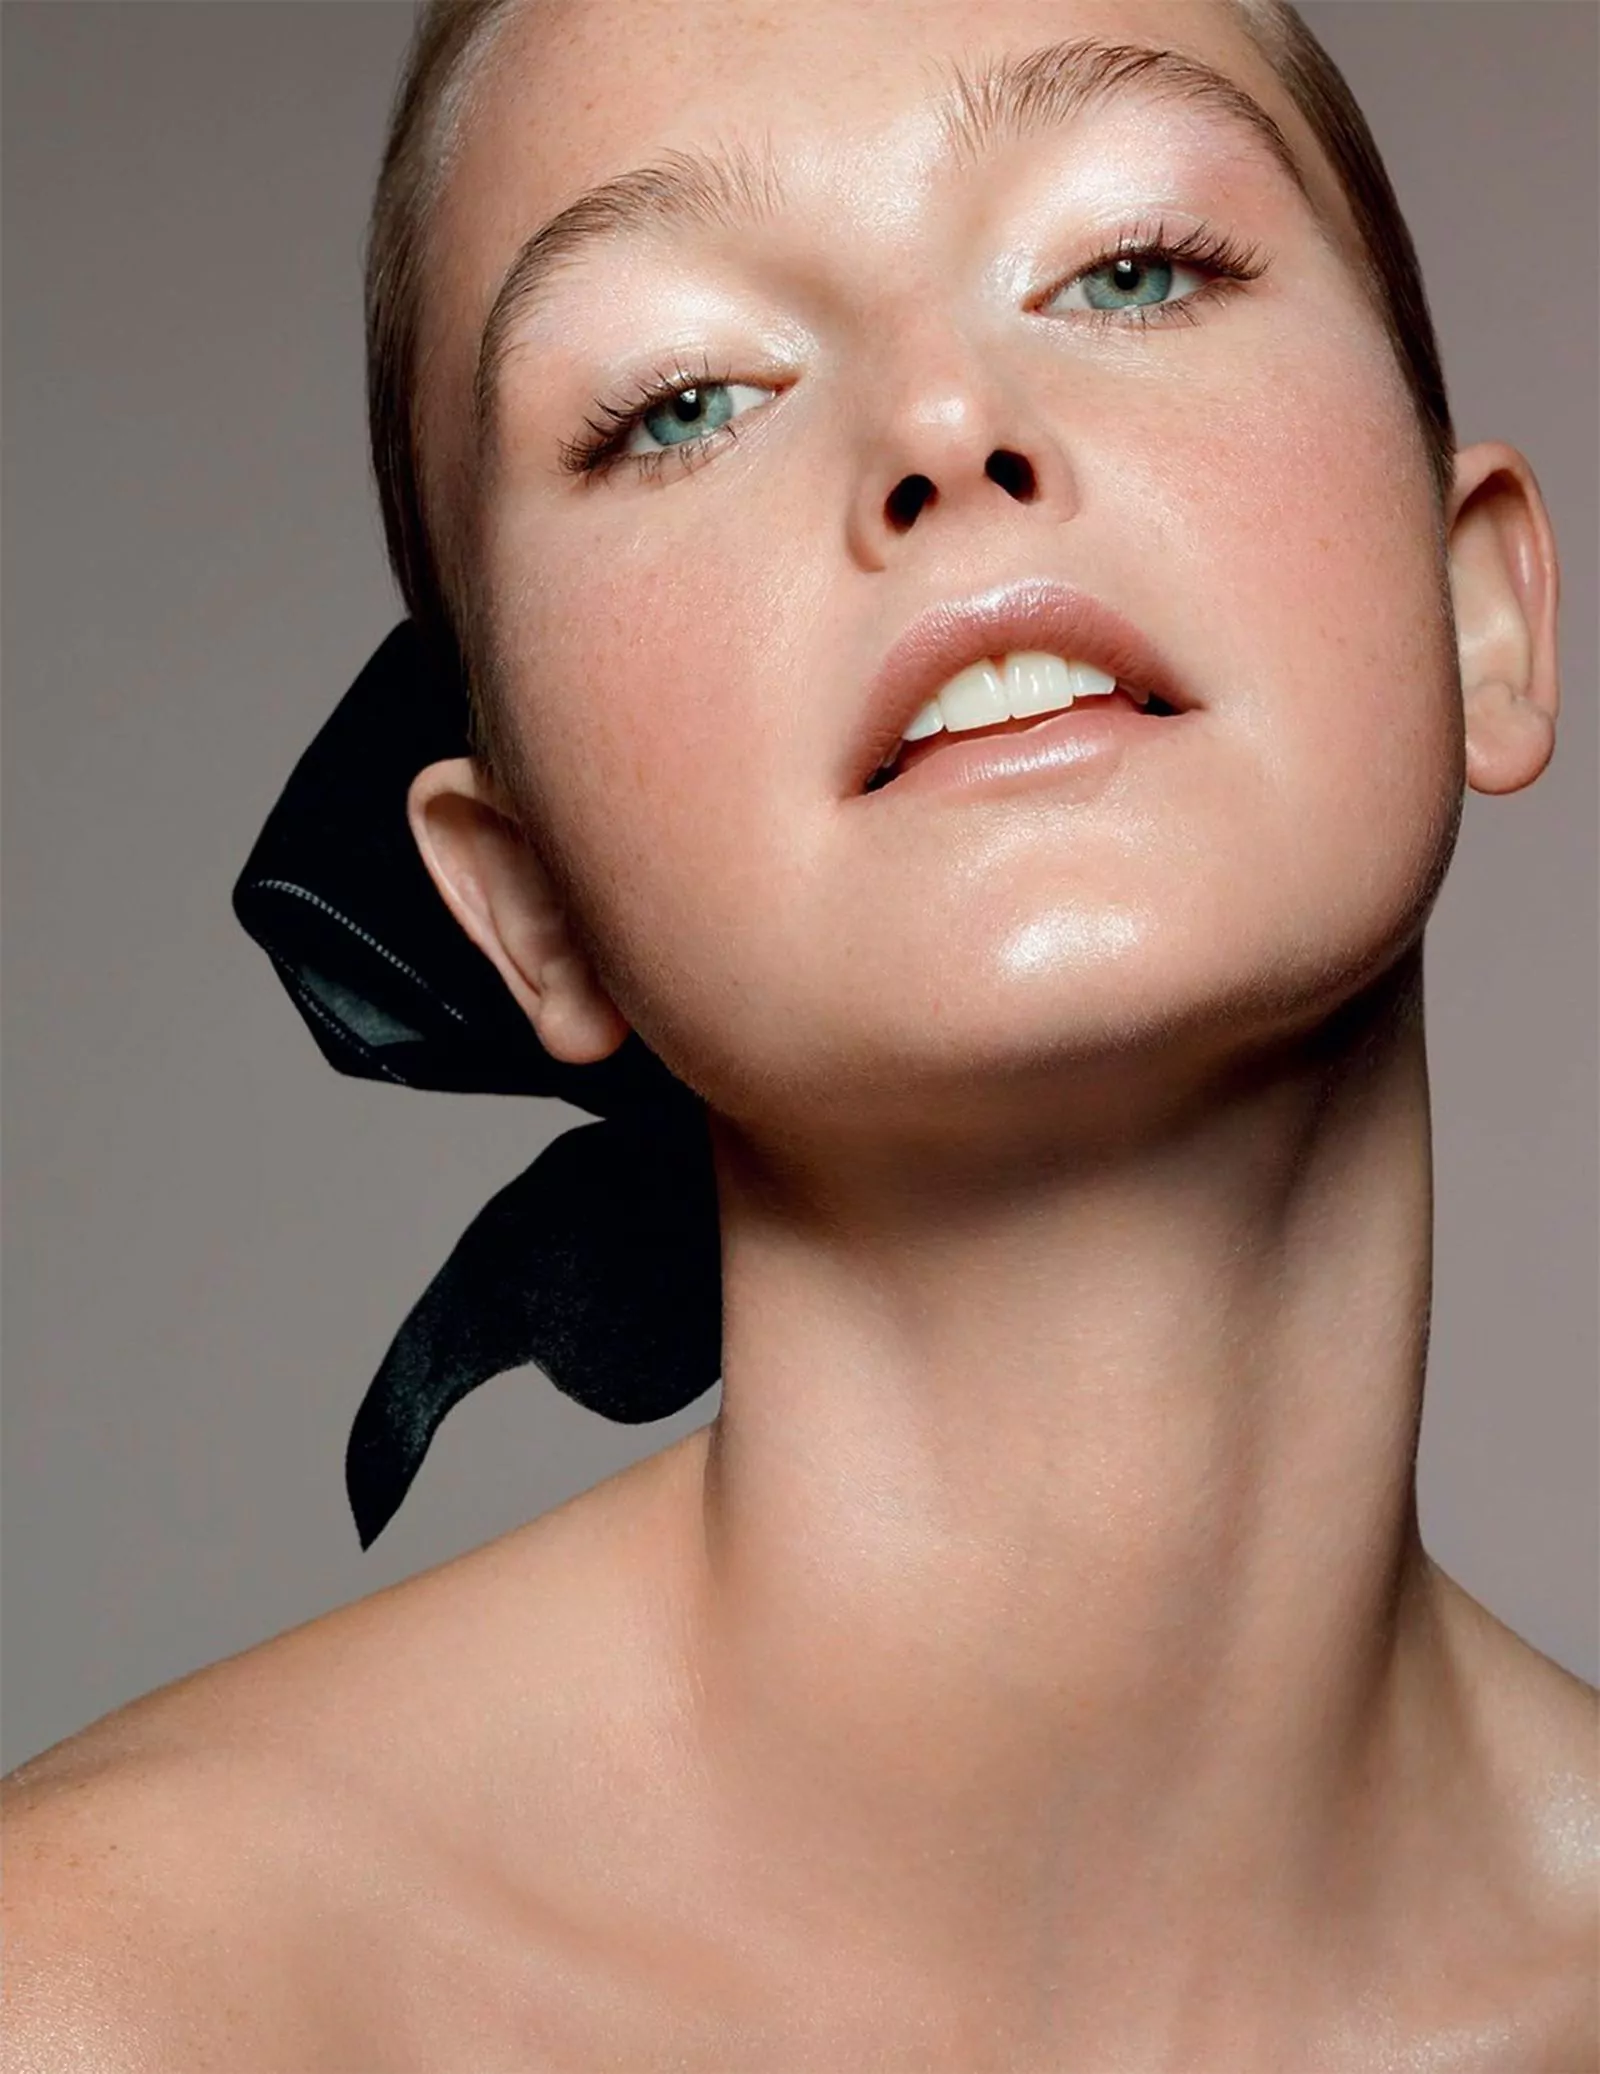 Джин Кэмпбелл в фотосерии Лиз Коллинс для Vogue Germany, фото 2